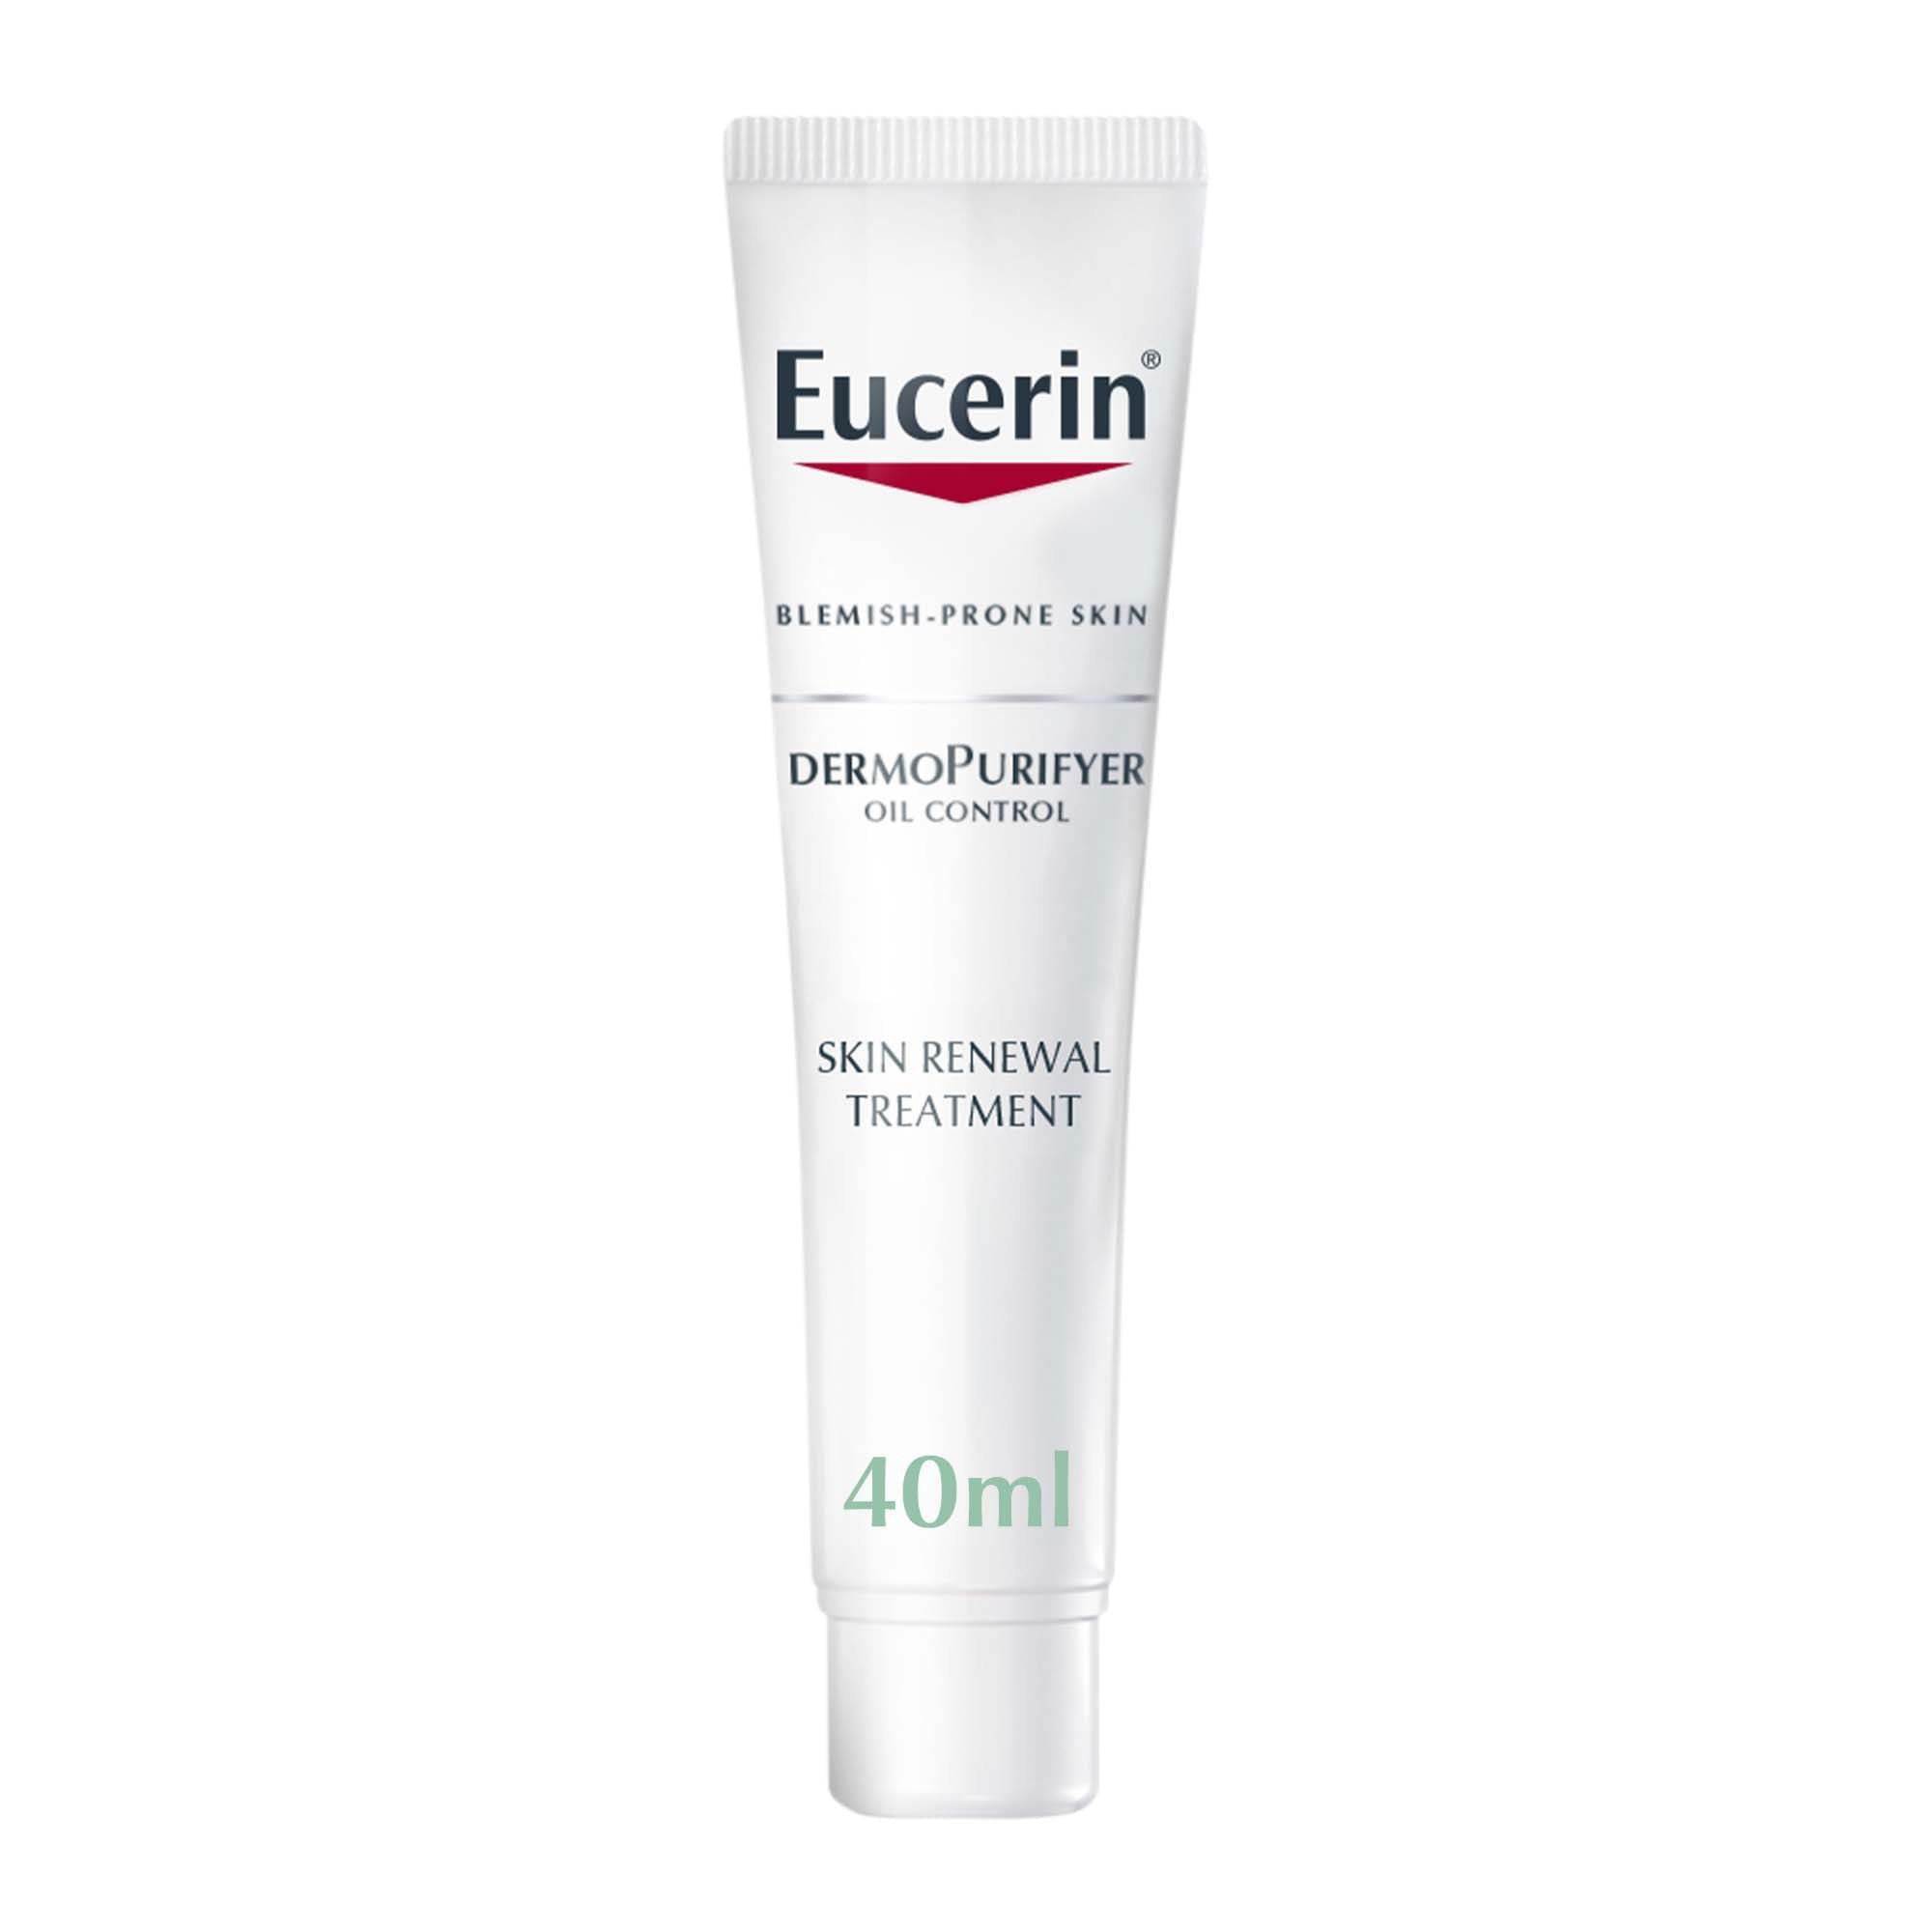 Eucerin DermoPurifyer Skin Renewal Treatment Serum, 40ml